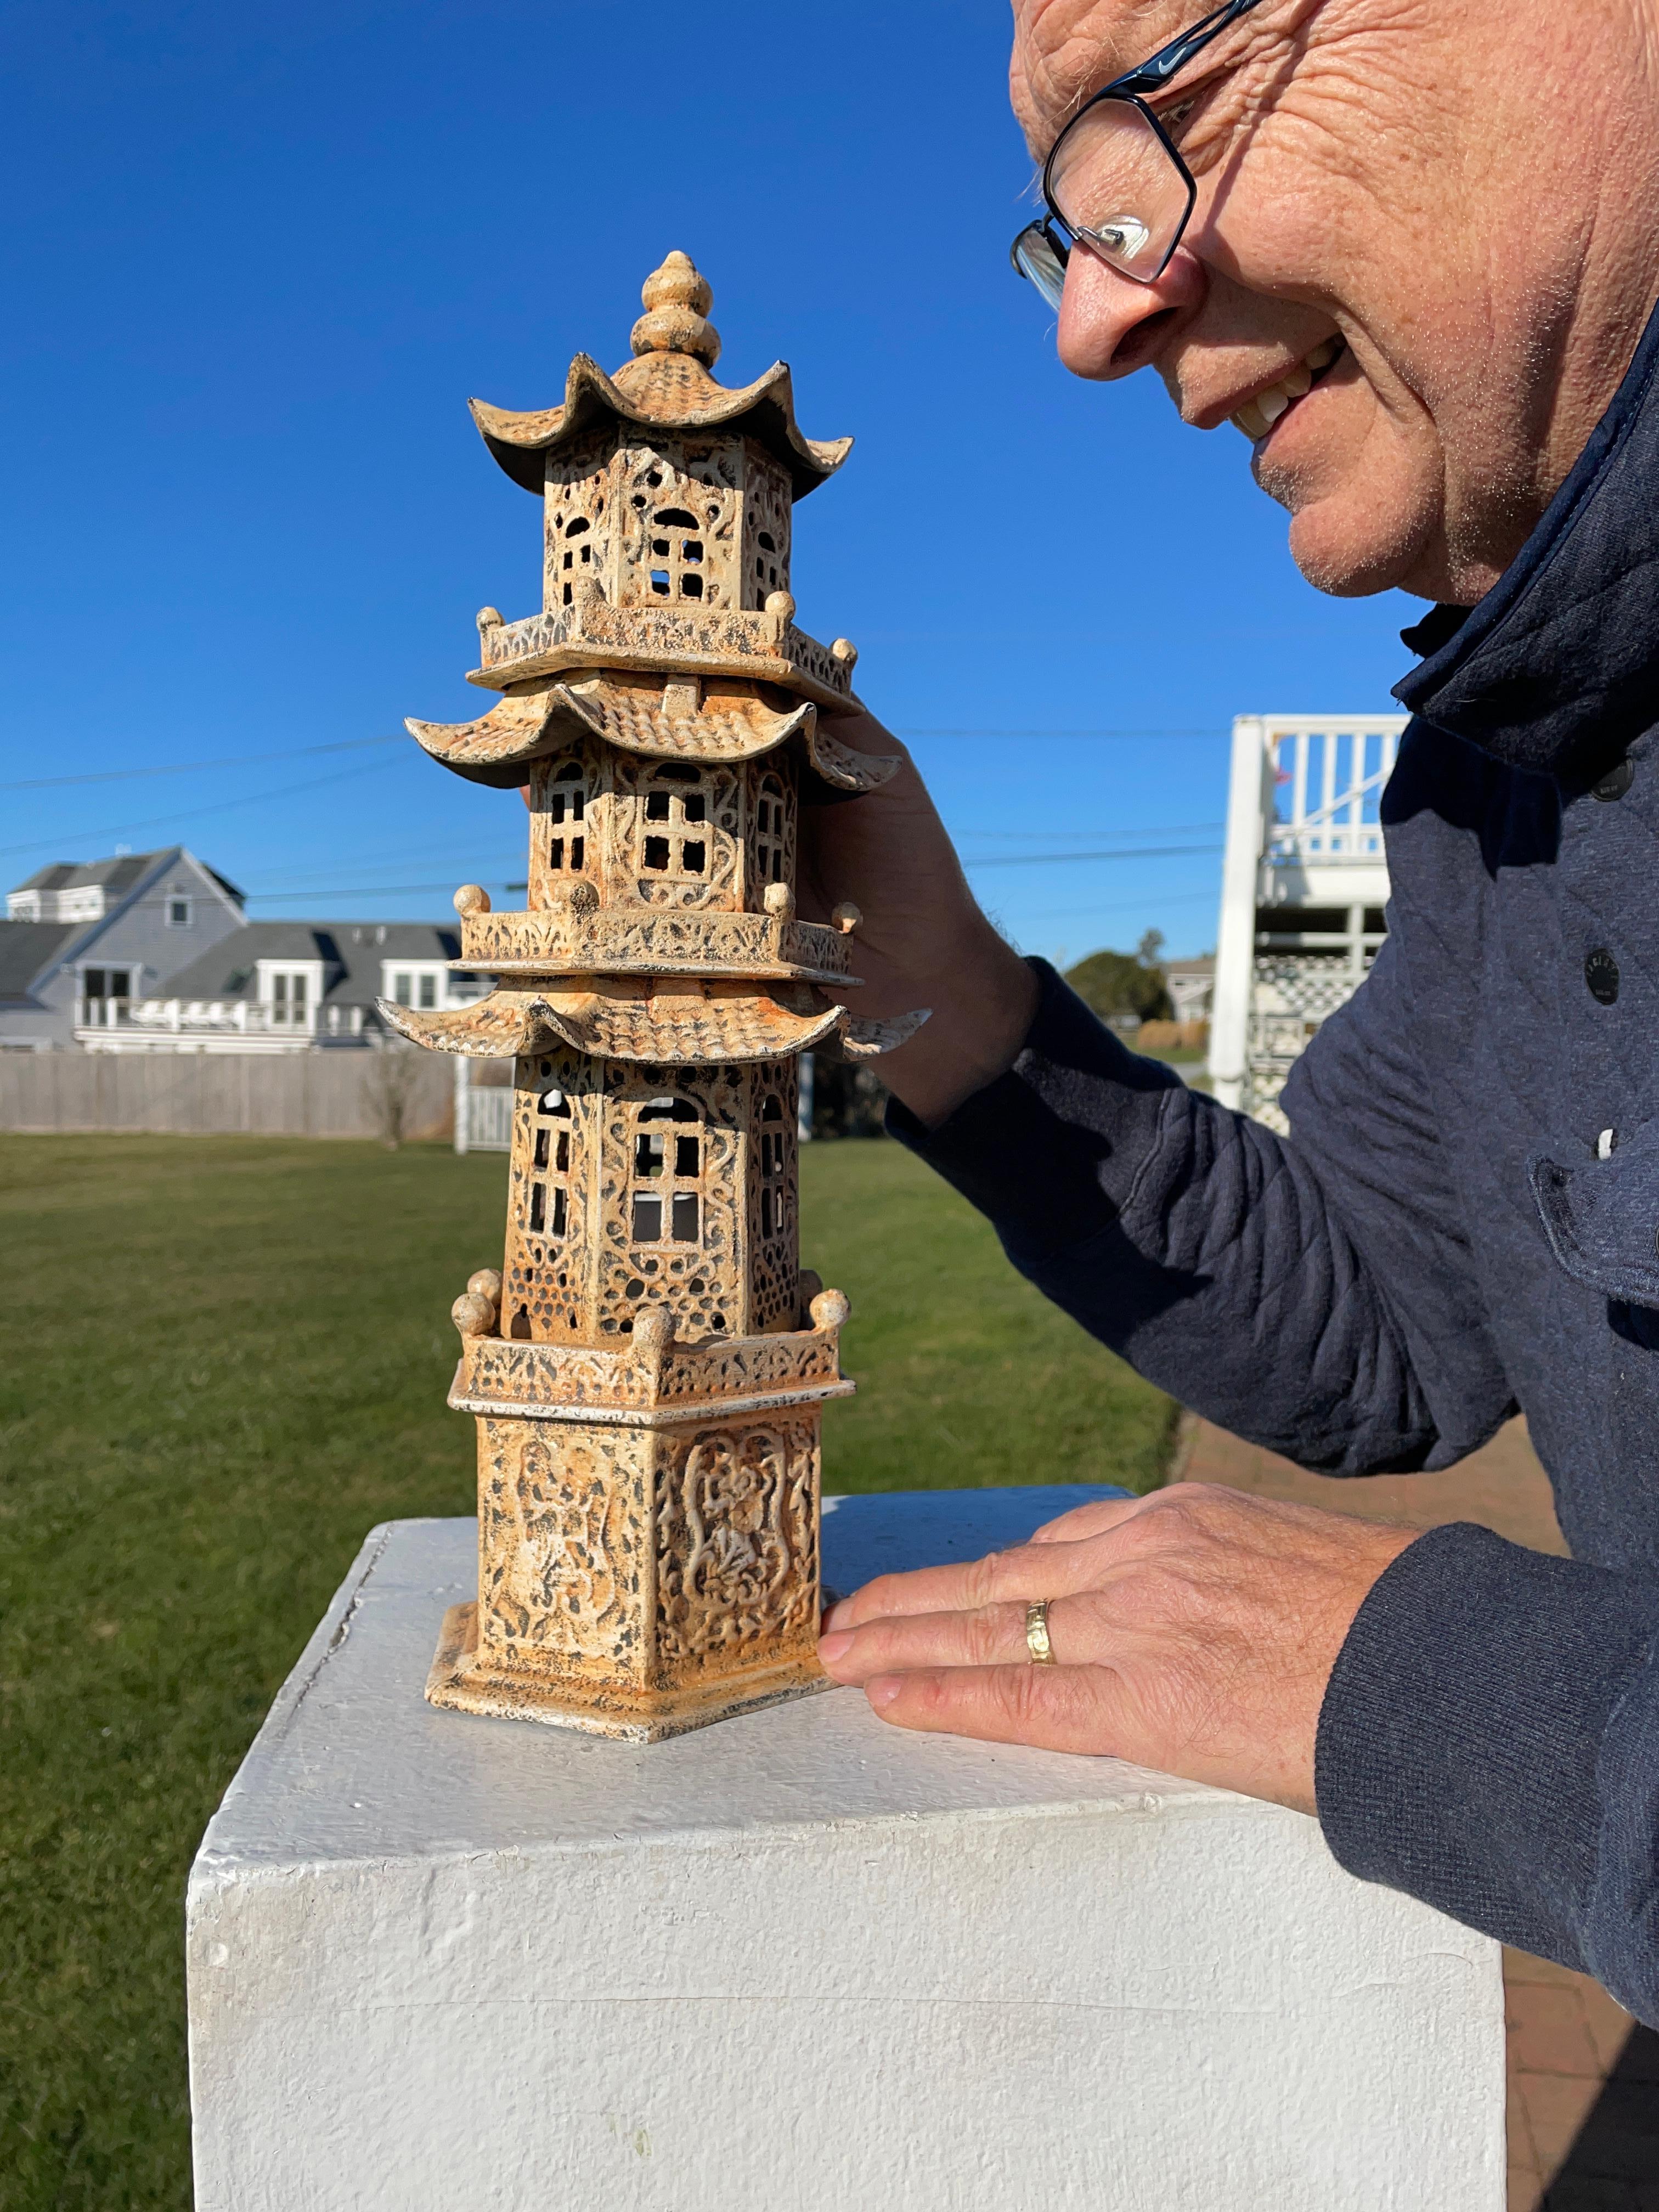 De notre récent jardin Acquisitions, 

Numéro rare 

Cette lanterne d'exportation chinoise de haute qualité, en forme de pagode, 